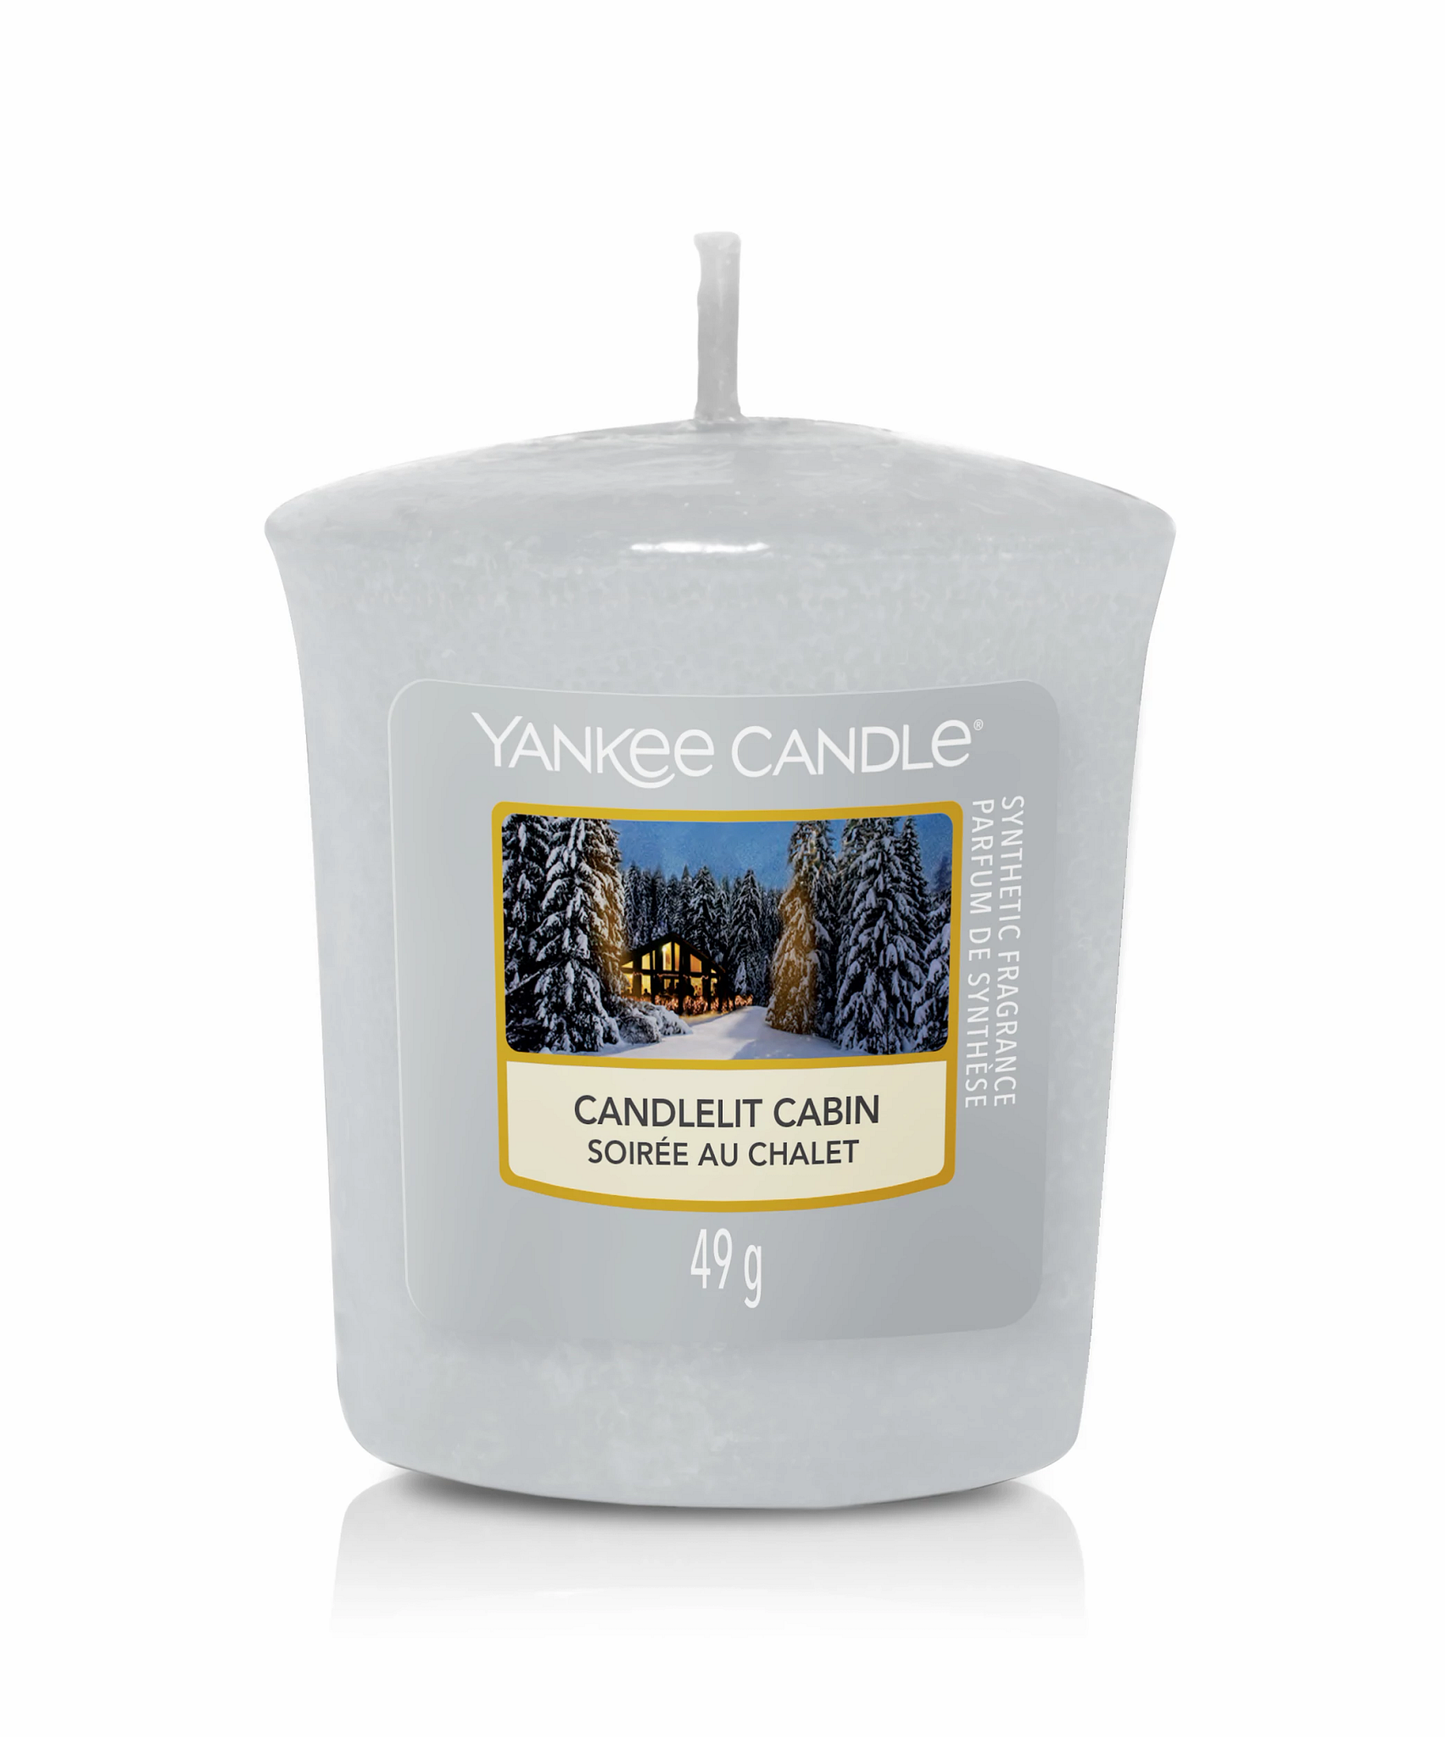 Yankee Candle - Candela Sampler Candlelit Cabin